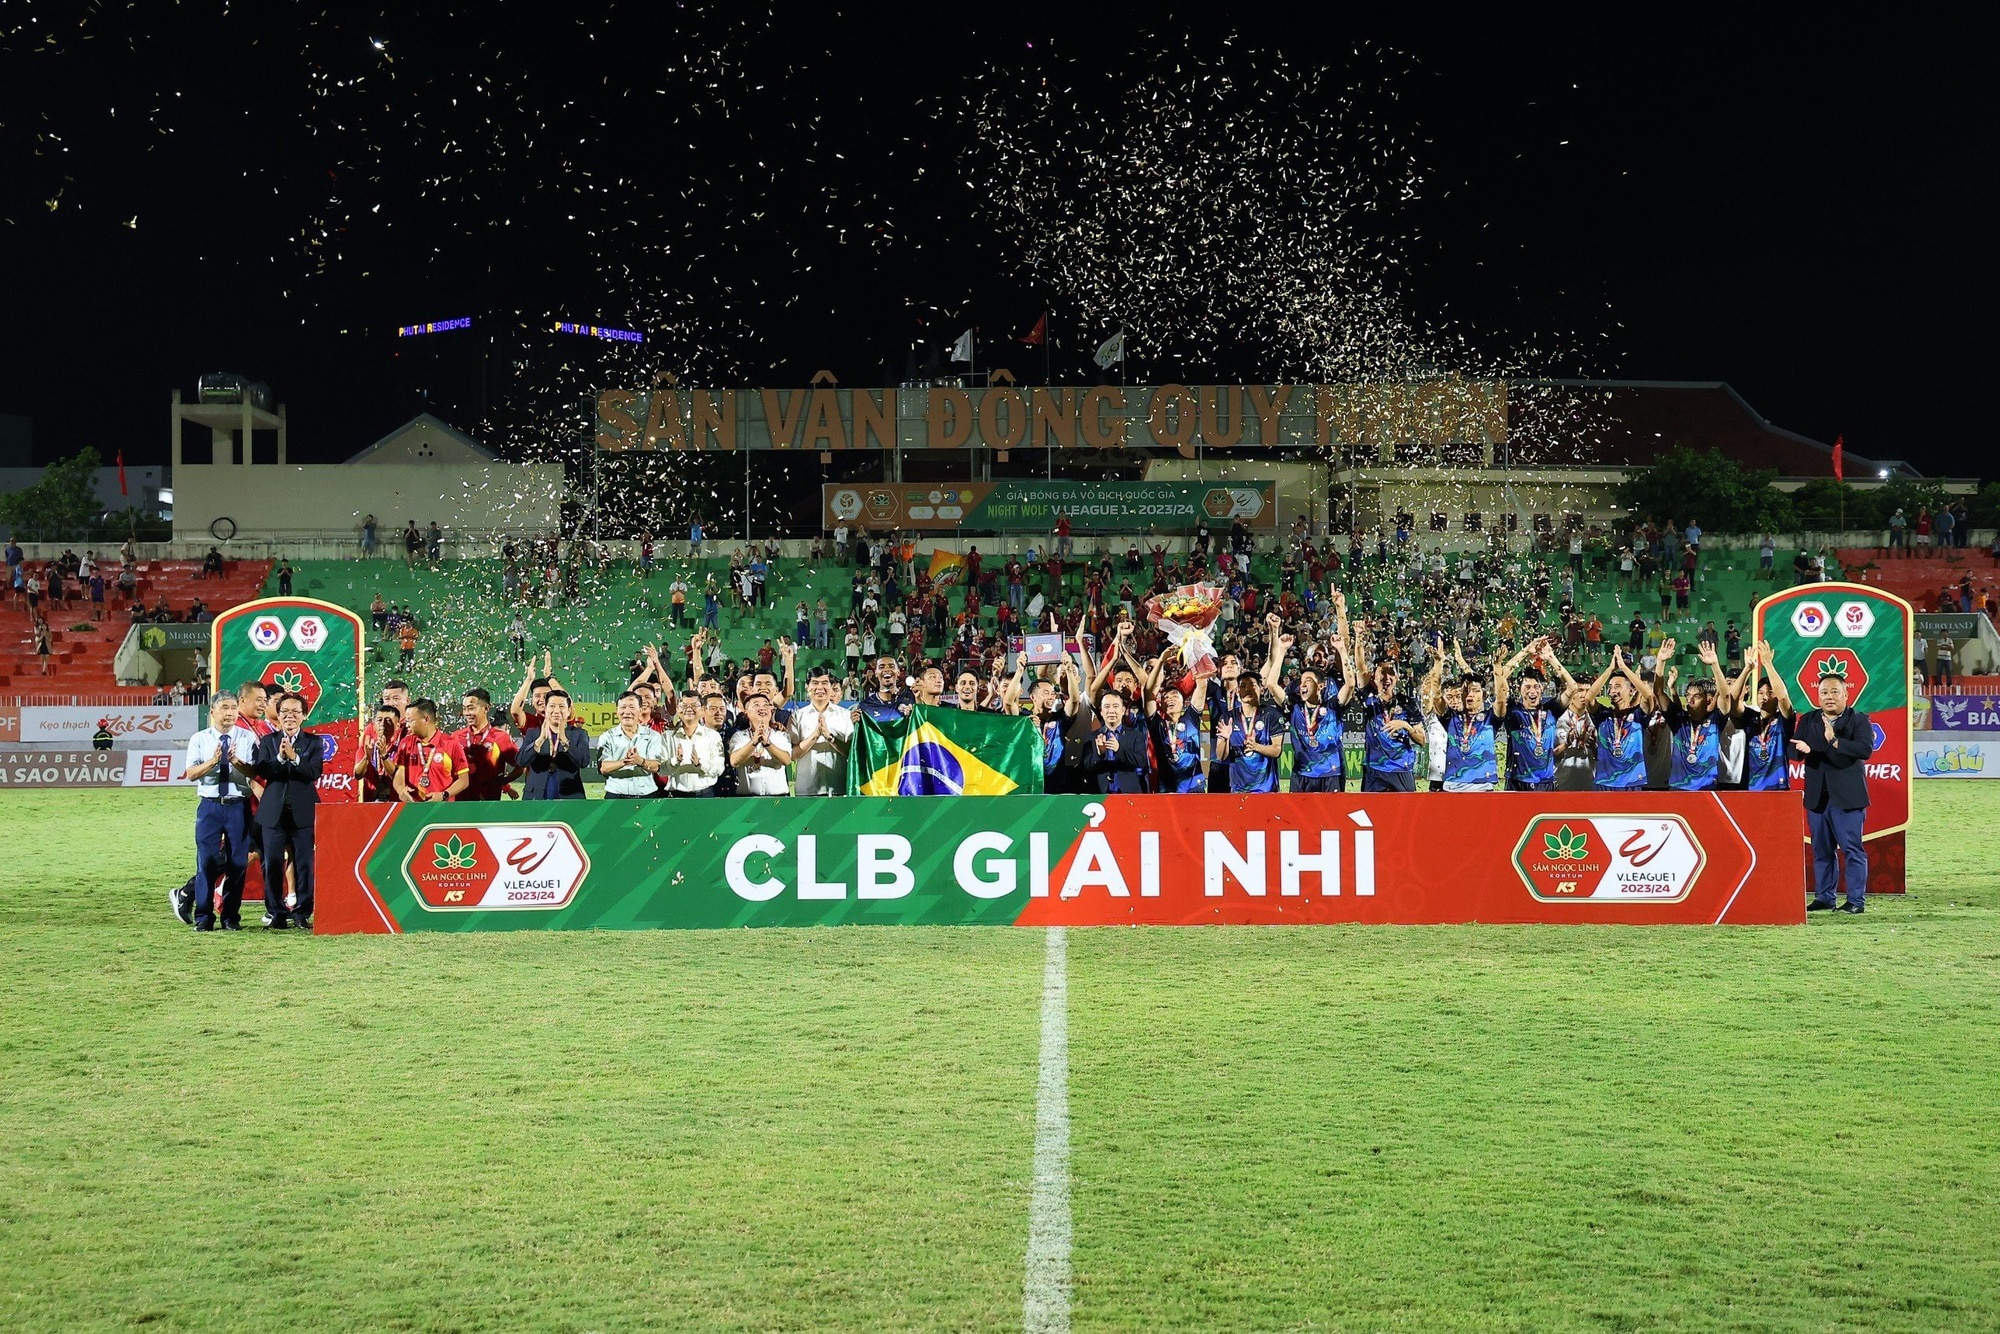 Thắng cực đậm CLB CAHN, CLB Bình Định về nhì thuyết phục ở V-League- Ảnh 1.